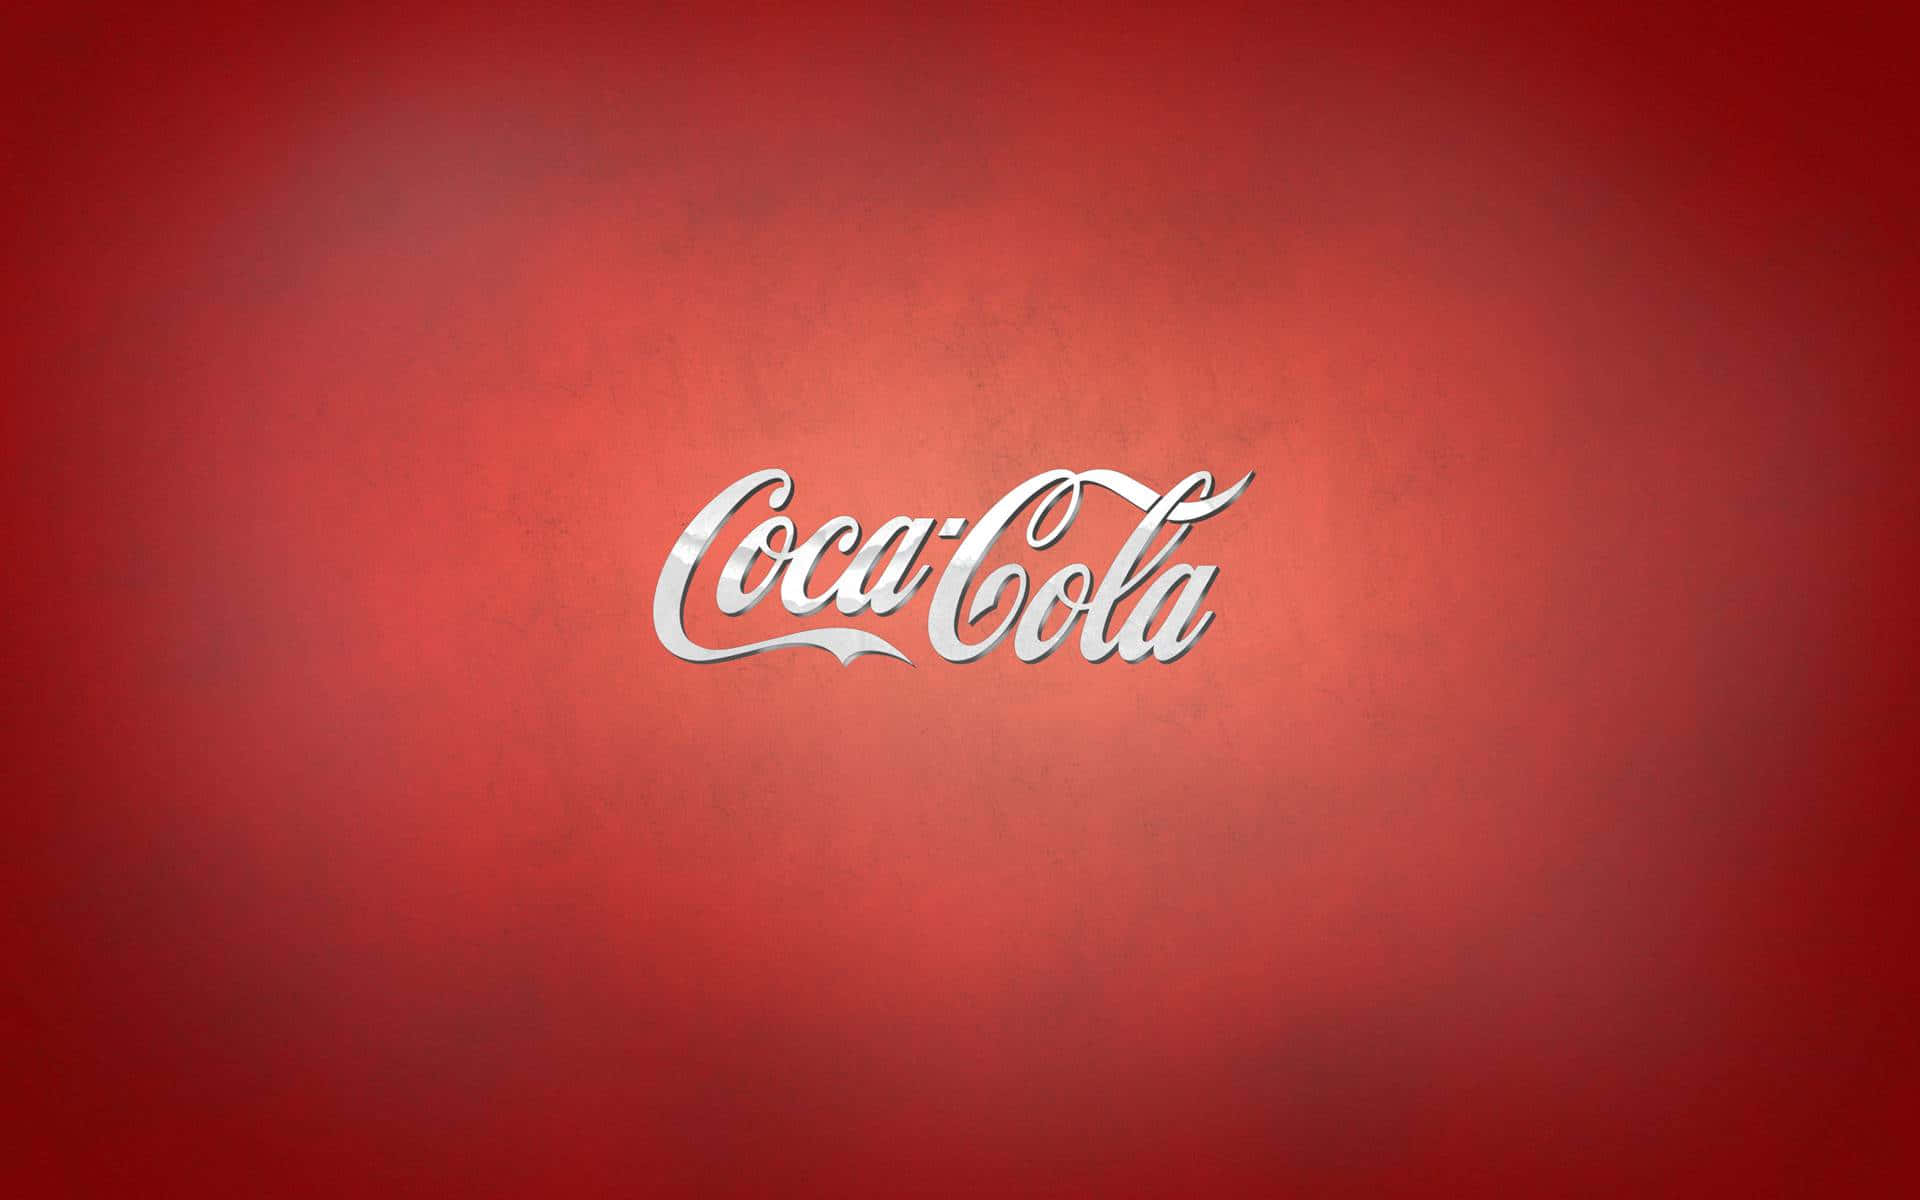 Titolospruzzo Vivace E Rinfrescante Di Coca-cola